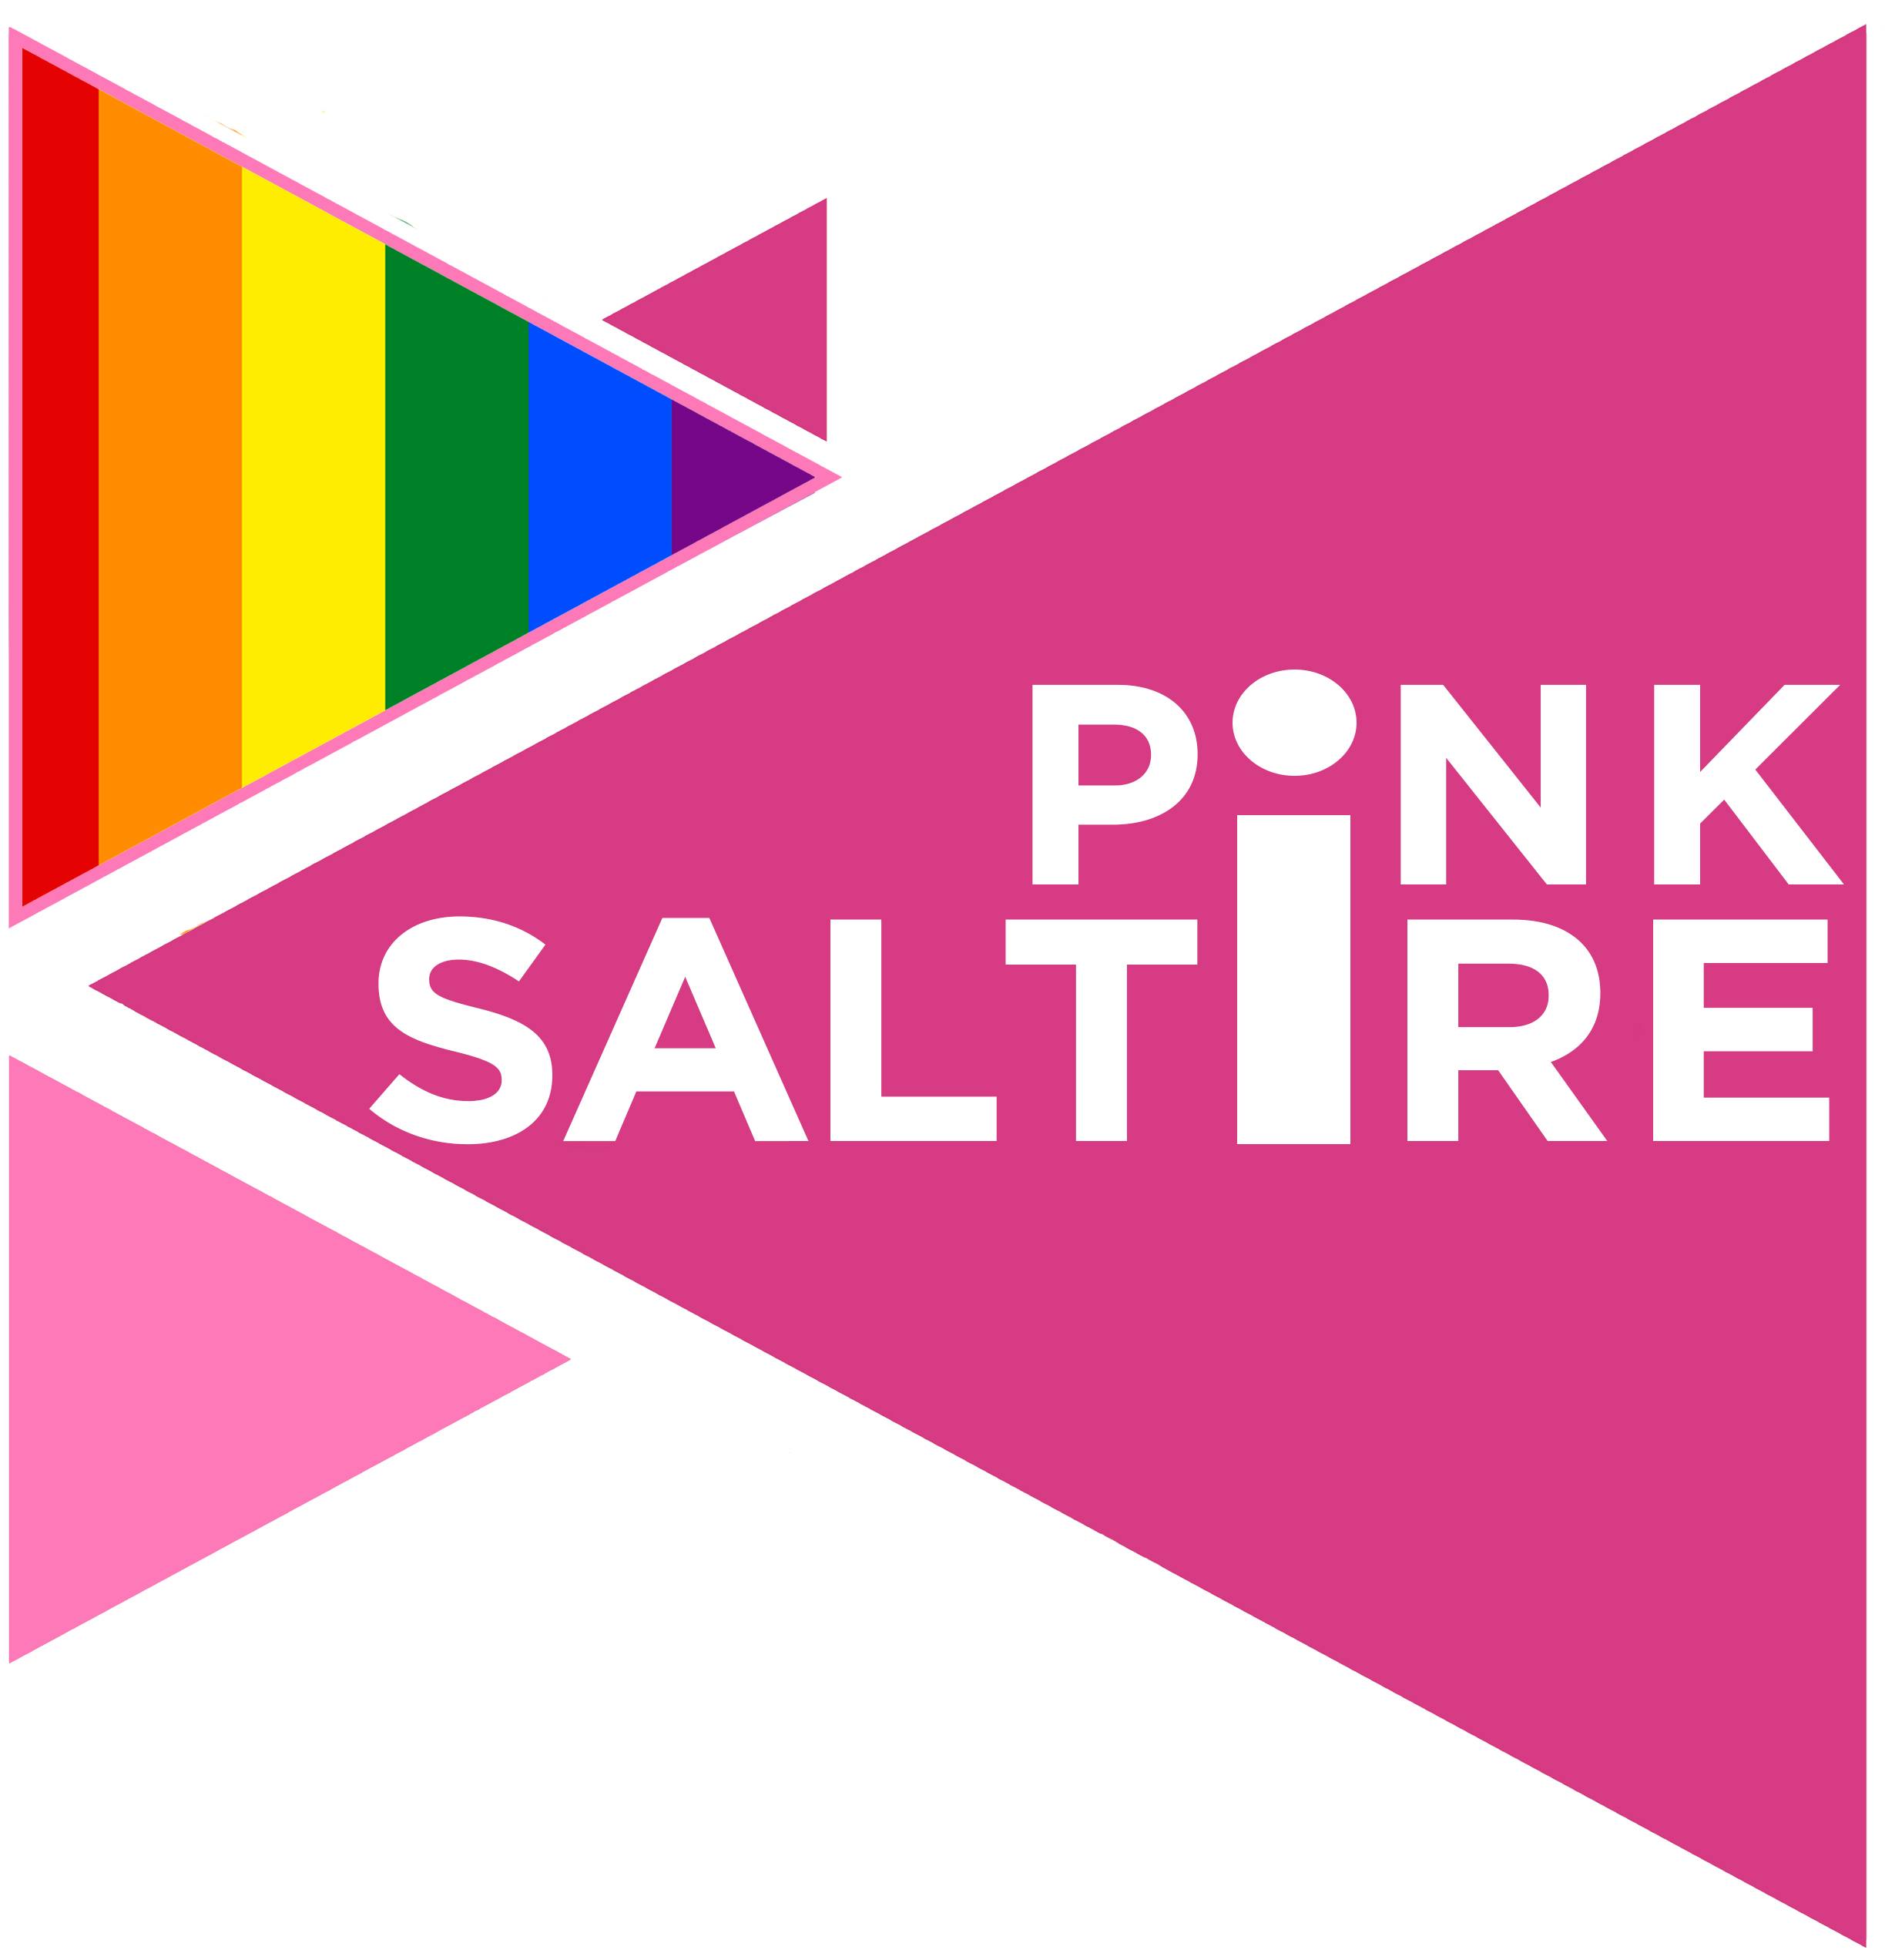 Pink Saltire